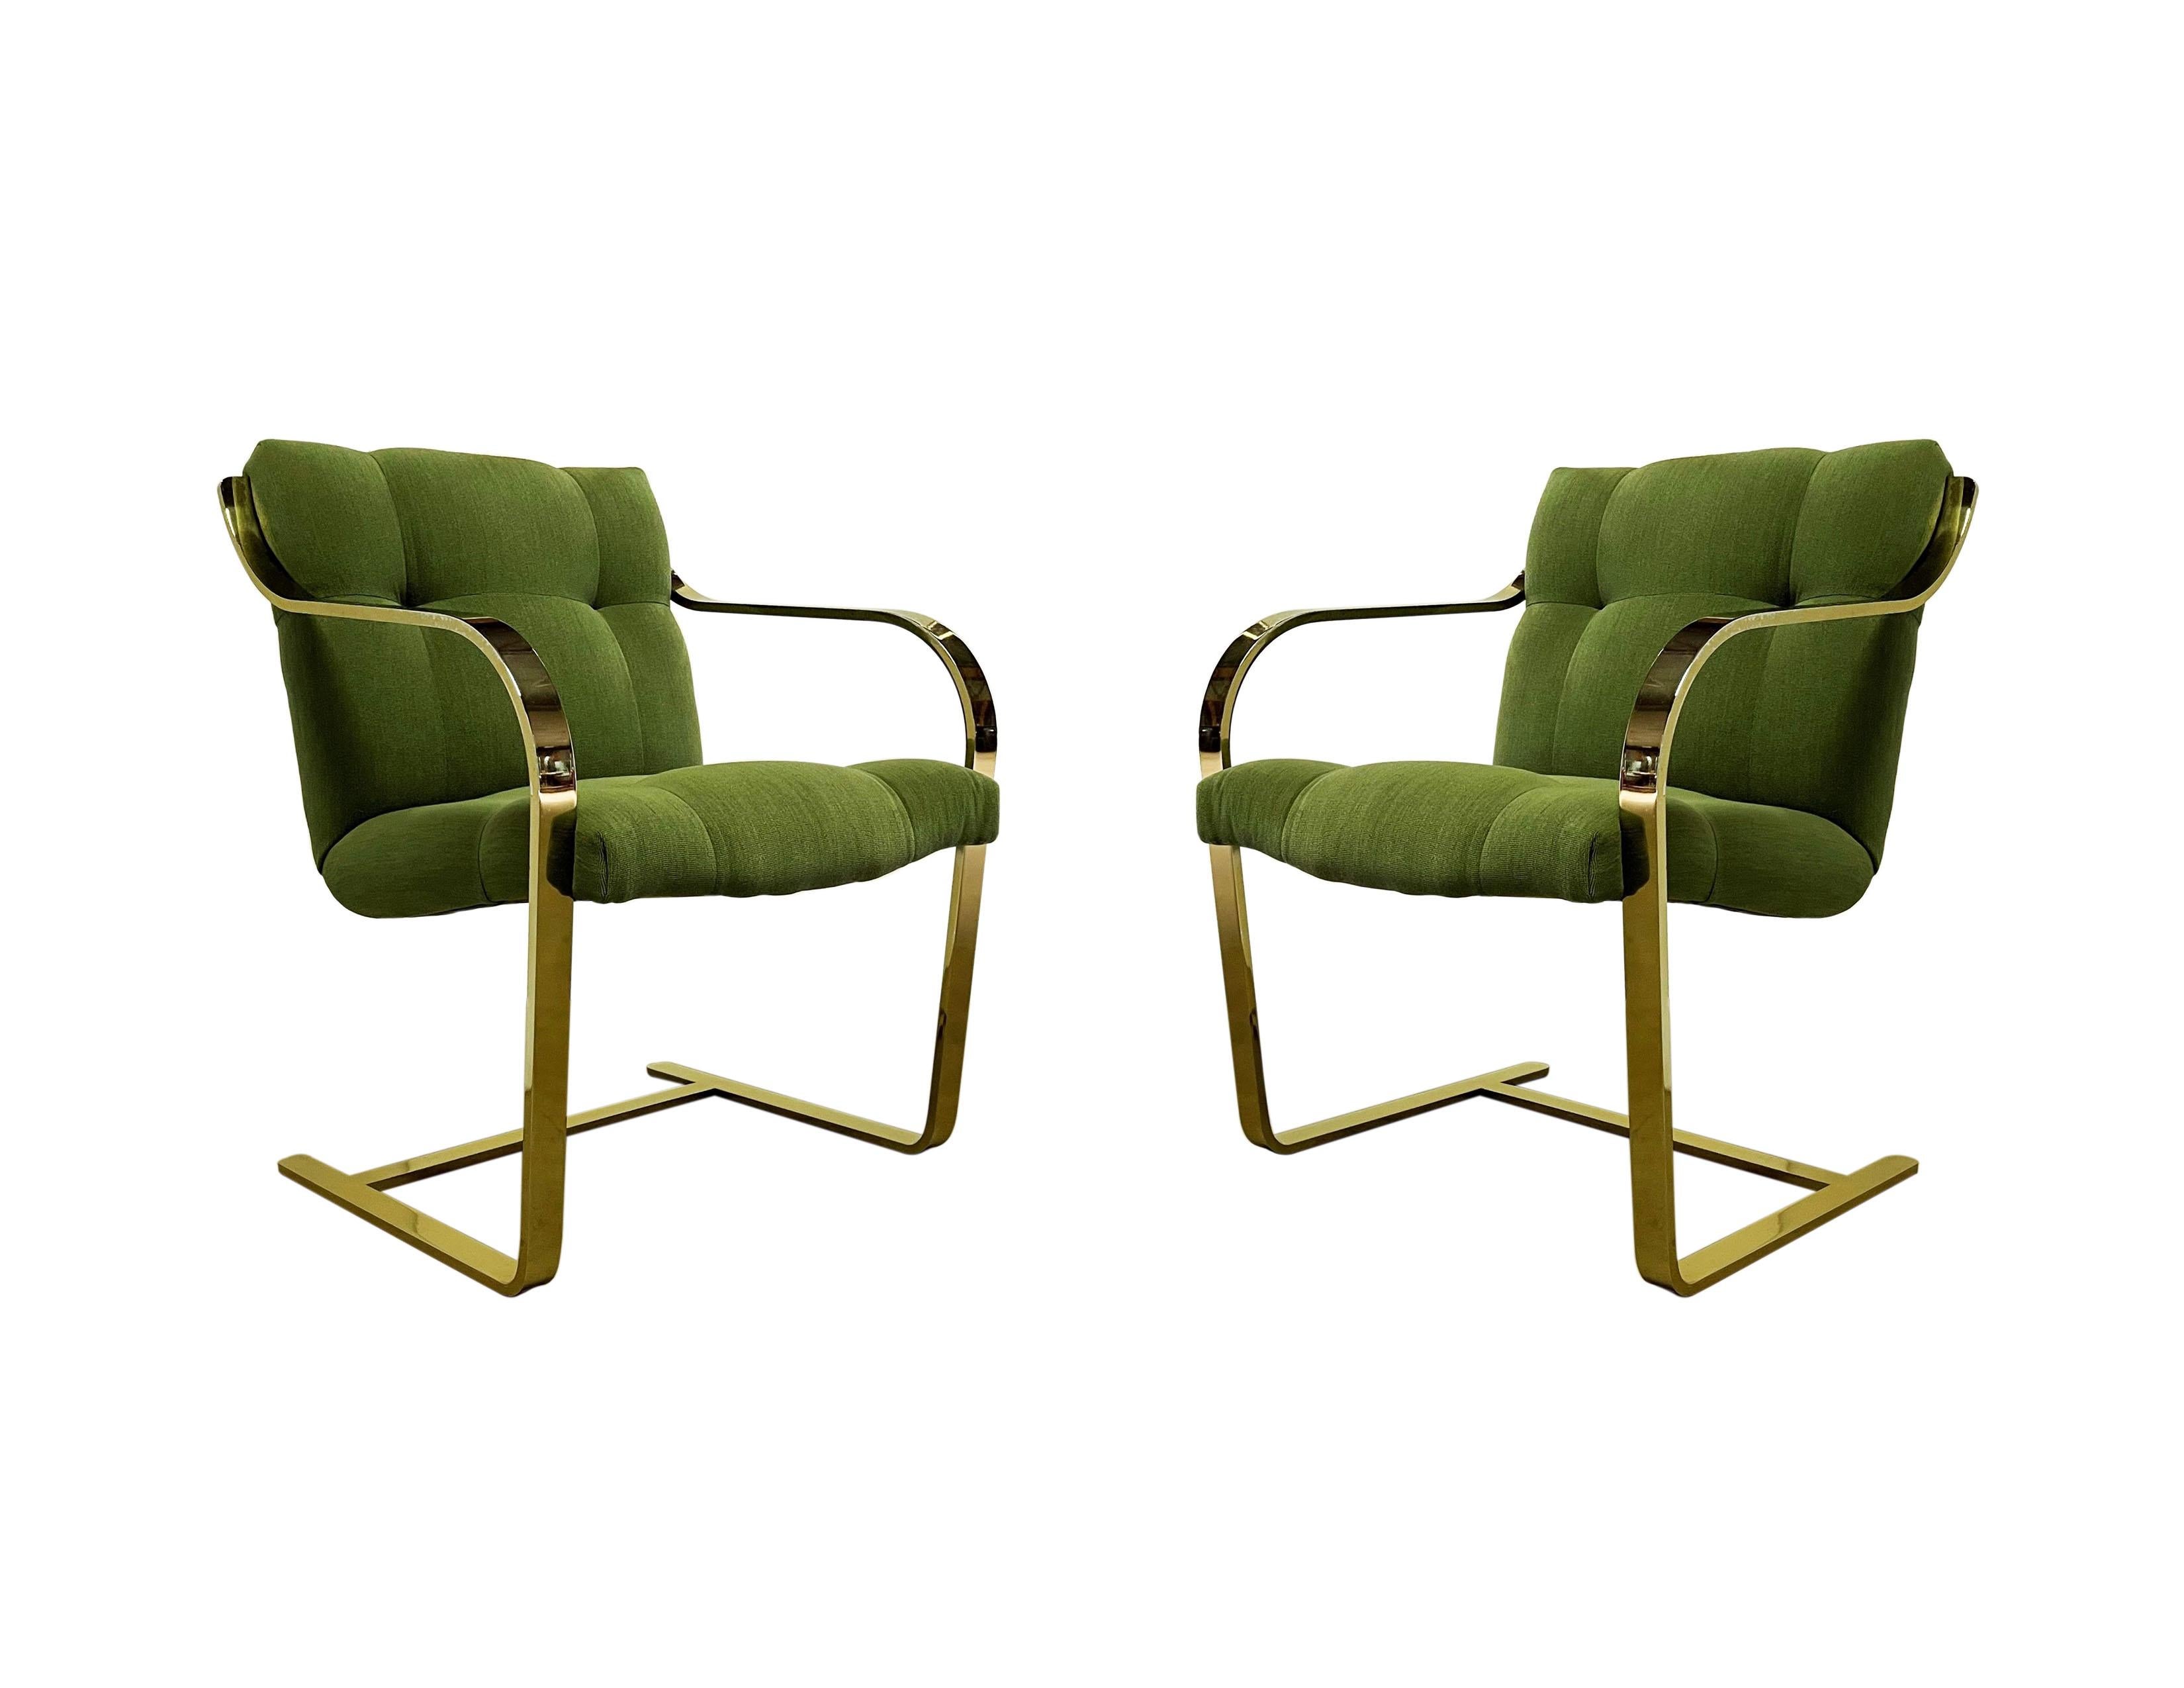 Inspiriert von den ikonischen Brünner Stühlen sind diese wuchtigen Flachstangen-Freischwinger von Brueton. Sie zeichnet sich durch ihre fließenden Linien aus und verfügt über Edelstahlrahmen in seltener vermessingter Ausführung. Geschweißt,